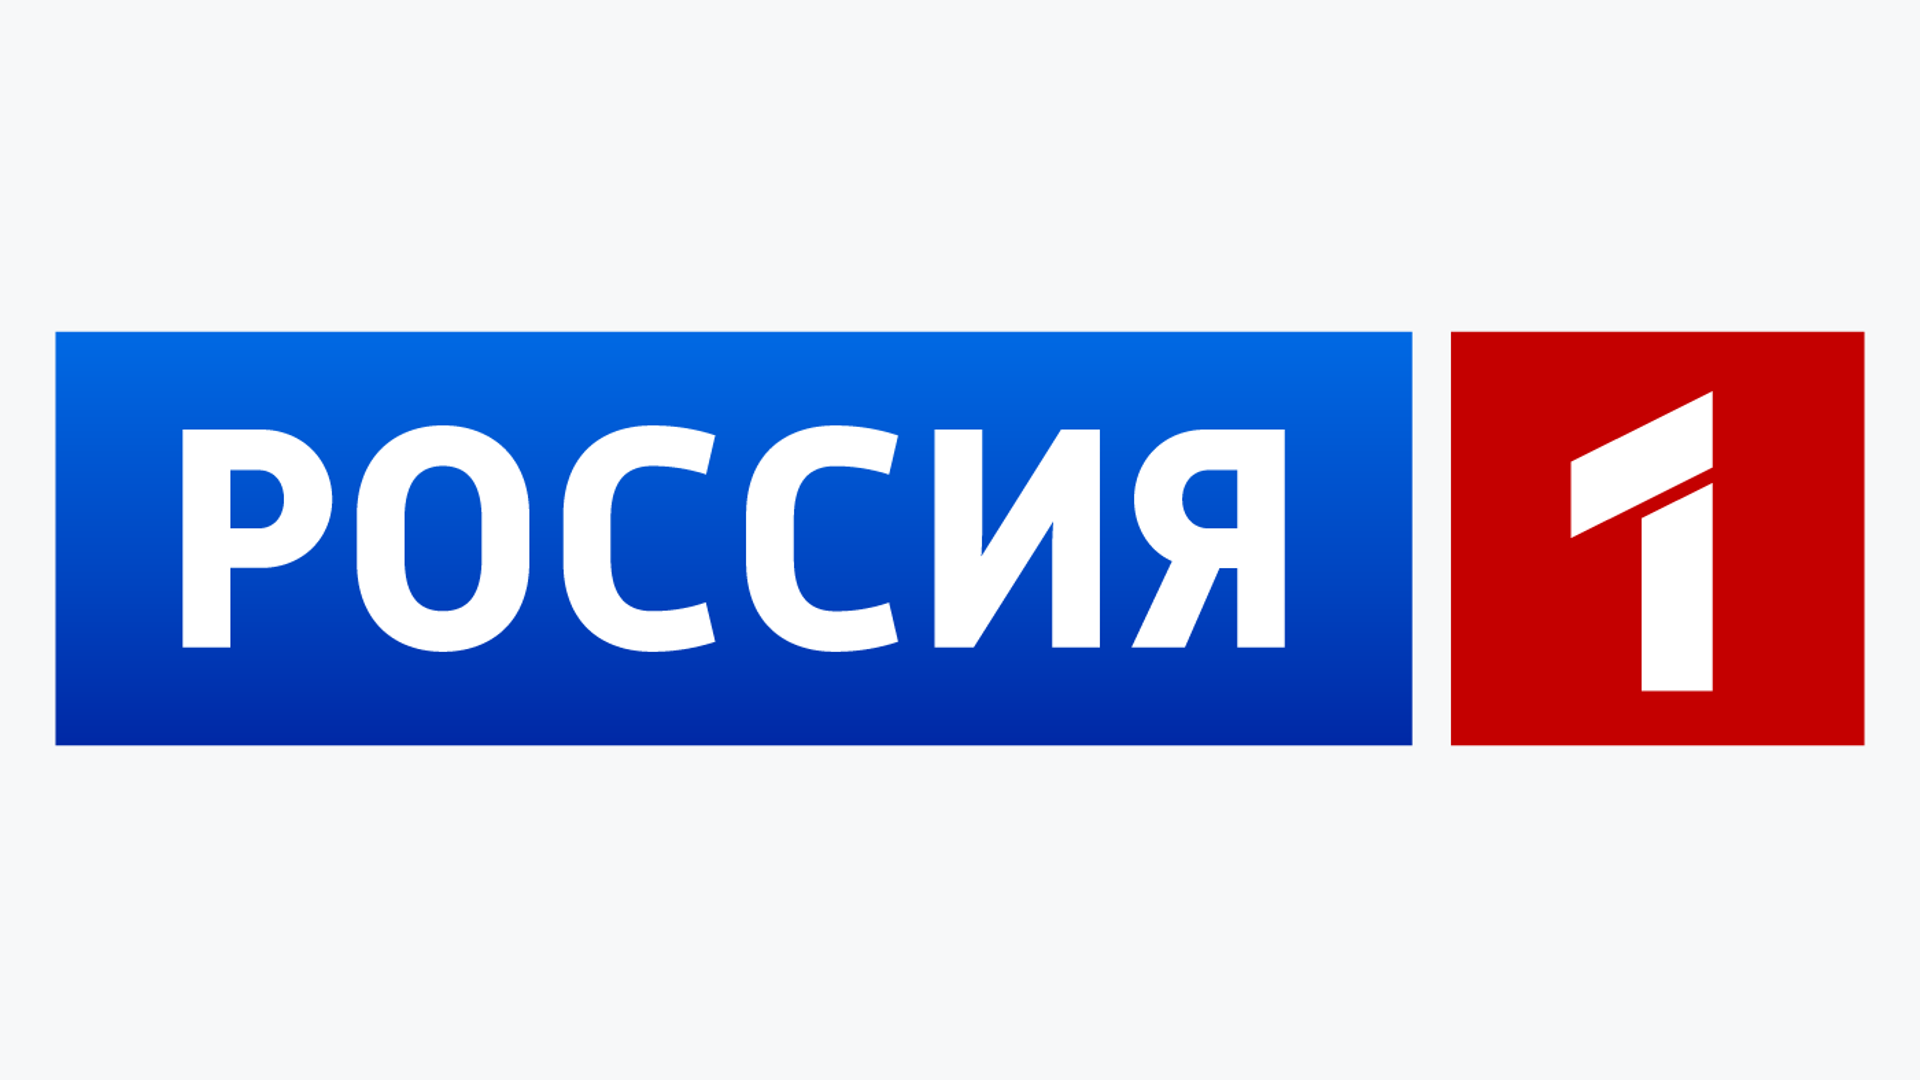 Федеральный канал россия 1